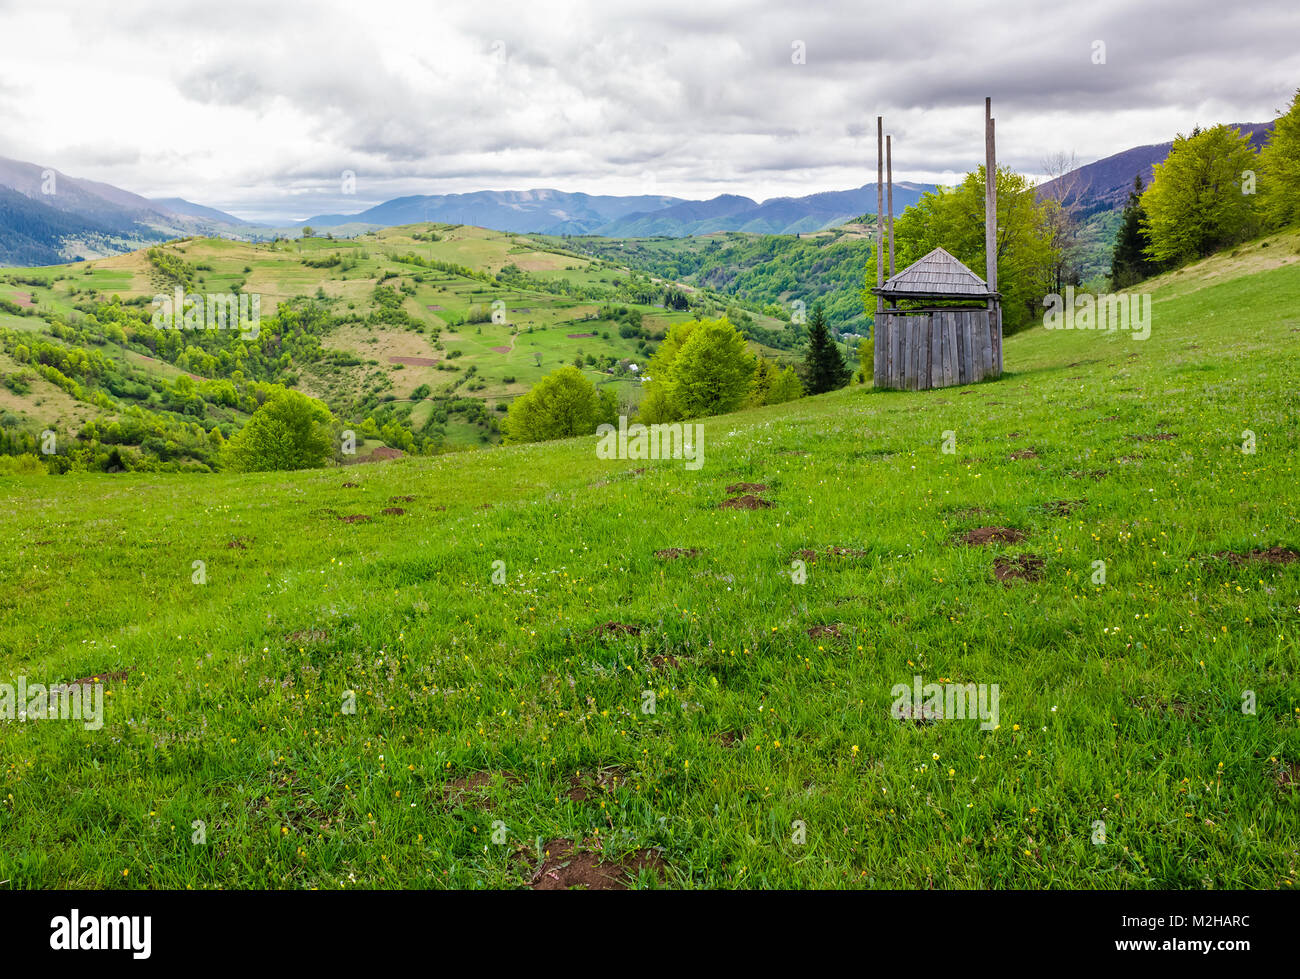 Vieux bois hay shed on grassy hillside. beaux paysages des montagnes de l'espace rural au printemps Banque D'Images